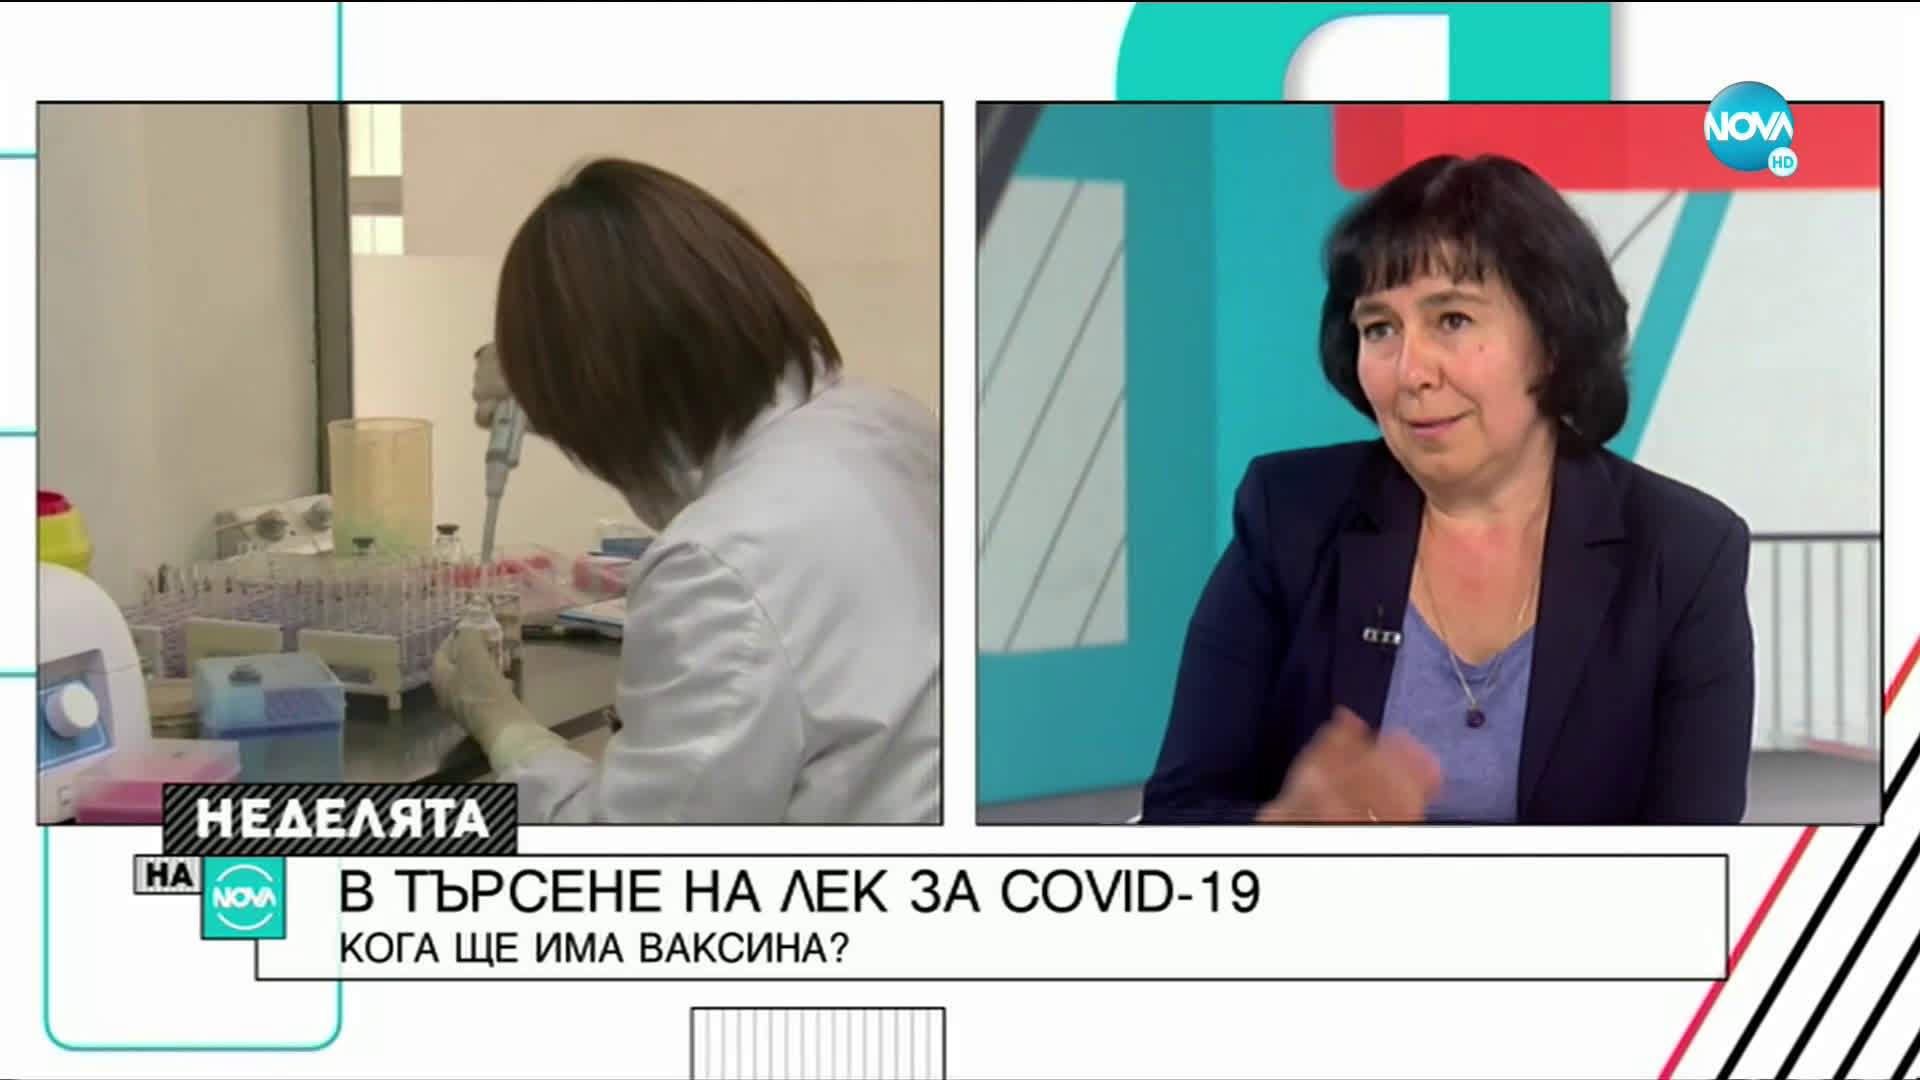 Кога ще има българска ваксина срещу COVID-19?